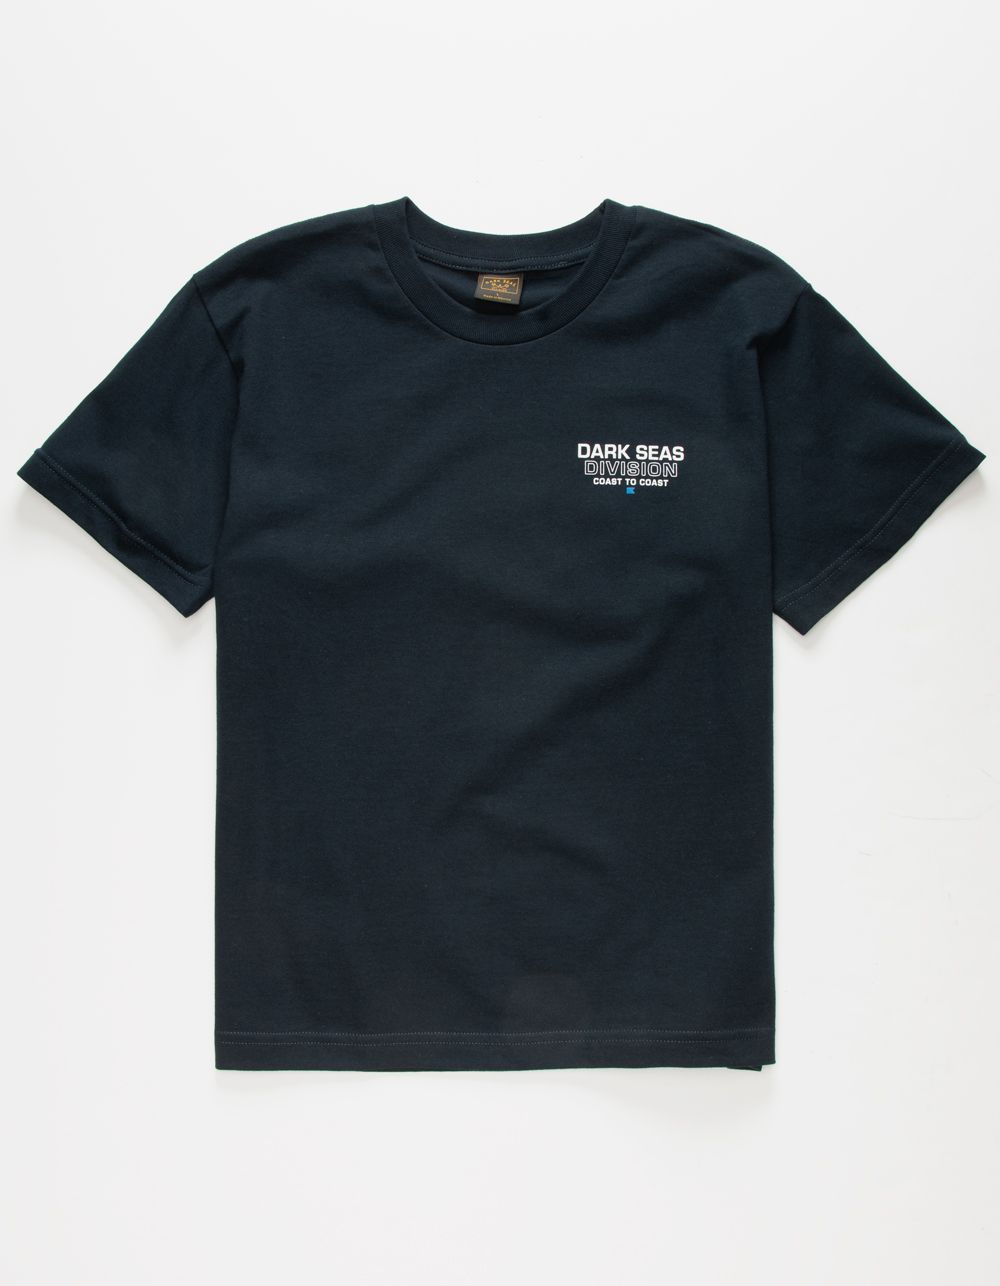 DARK SEAS Thresher Boys T-Shirt -   17 DIY Clothes Man boys ideas